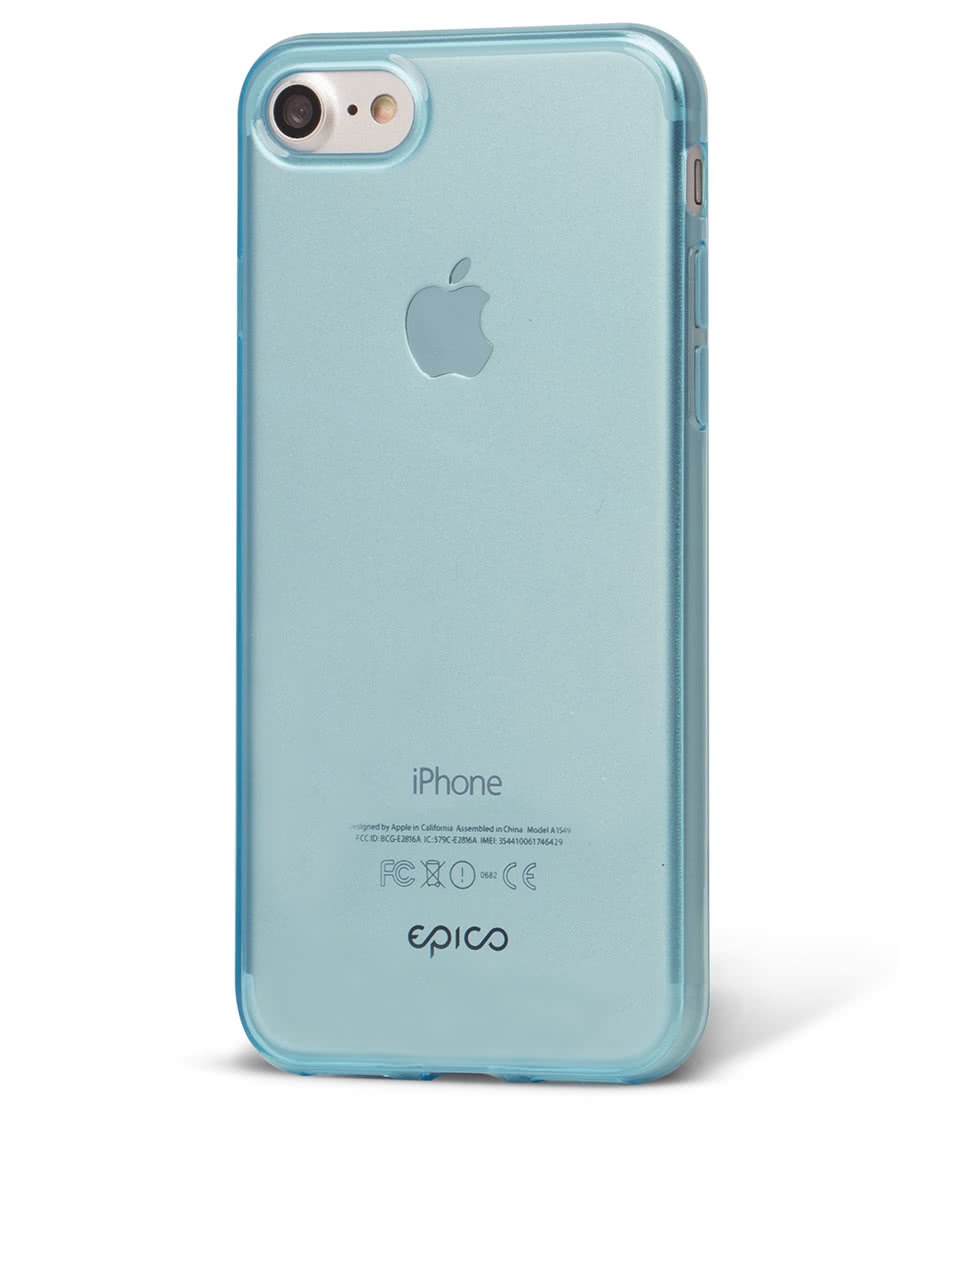 Modrý průhledný ultratenký plastový kryt pro iPhone 7 EPICO TWIGGY GLOSS